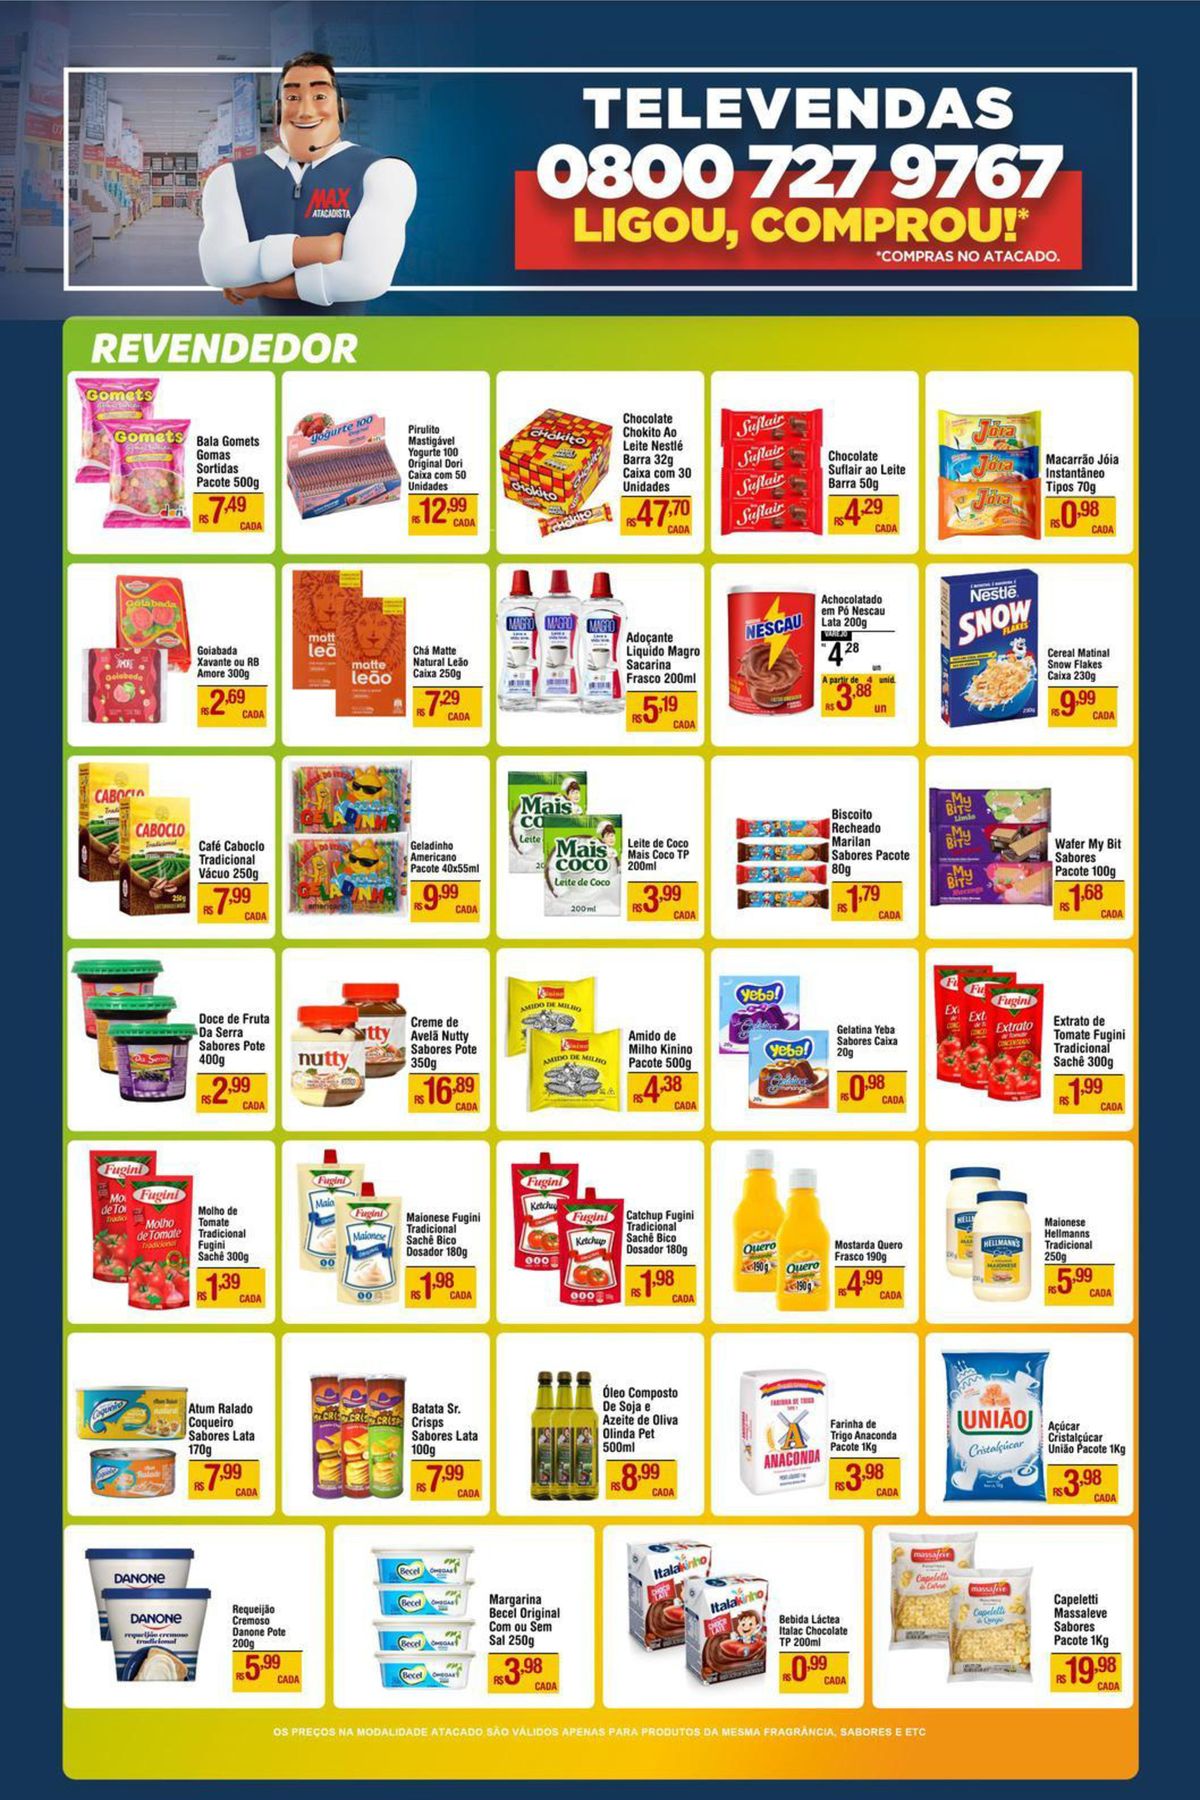 Ofertas de supermercado: Bala Gomets, Gomas e Sortidas